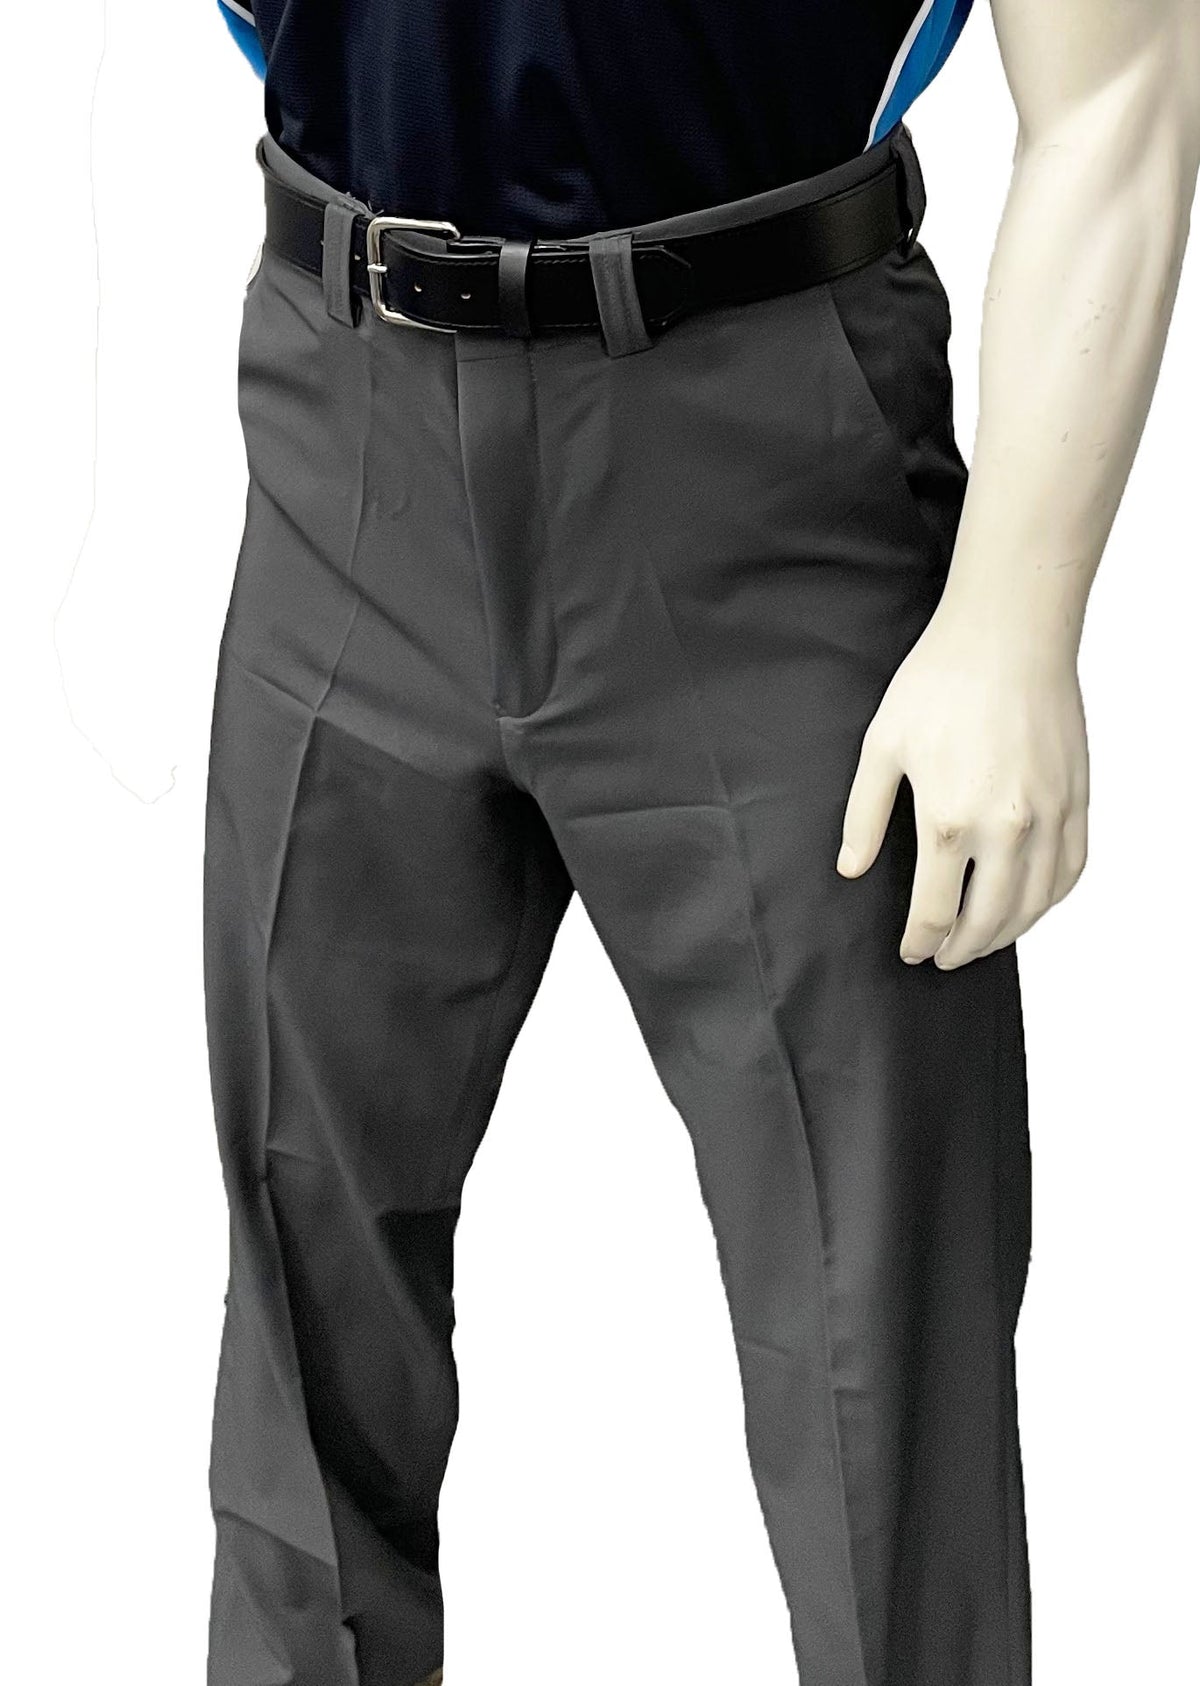 smitty | BBS-357 | Pantalones de árbitro combinados elásticos en 4 direcciones con frente plano y cintura expansora | Gris carbón 